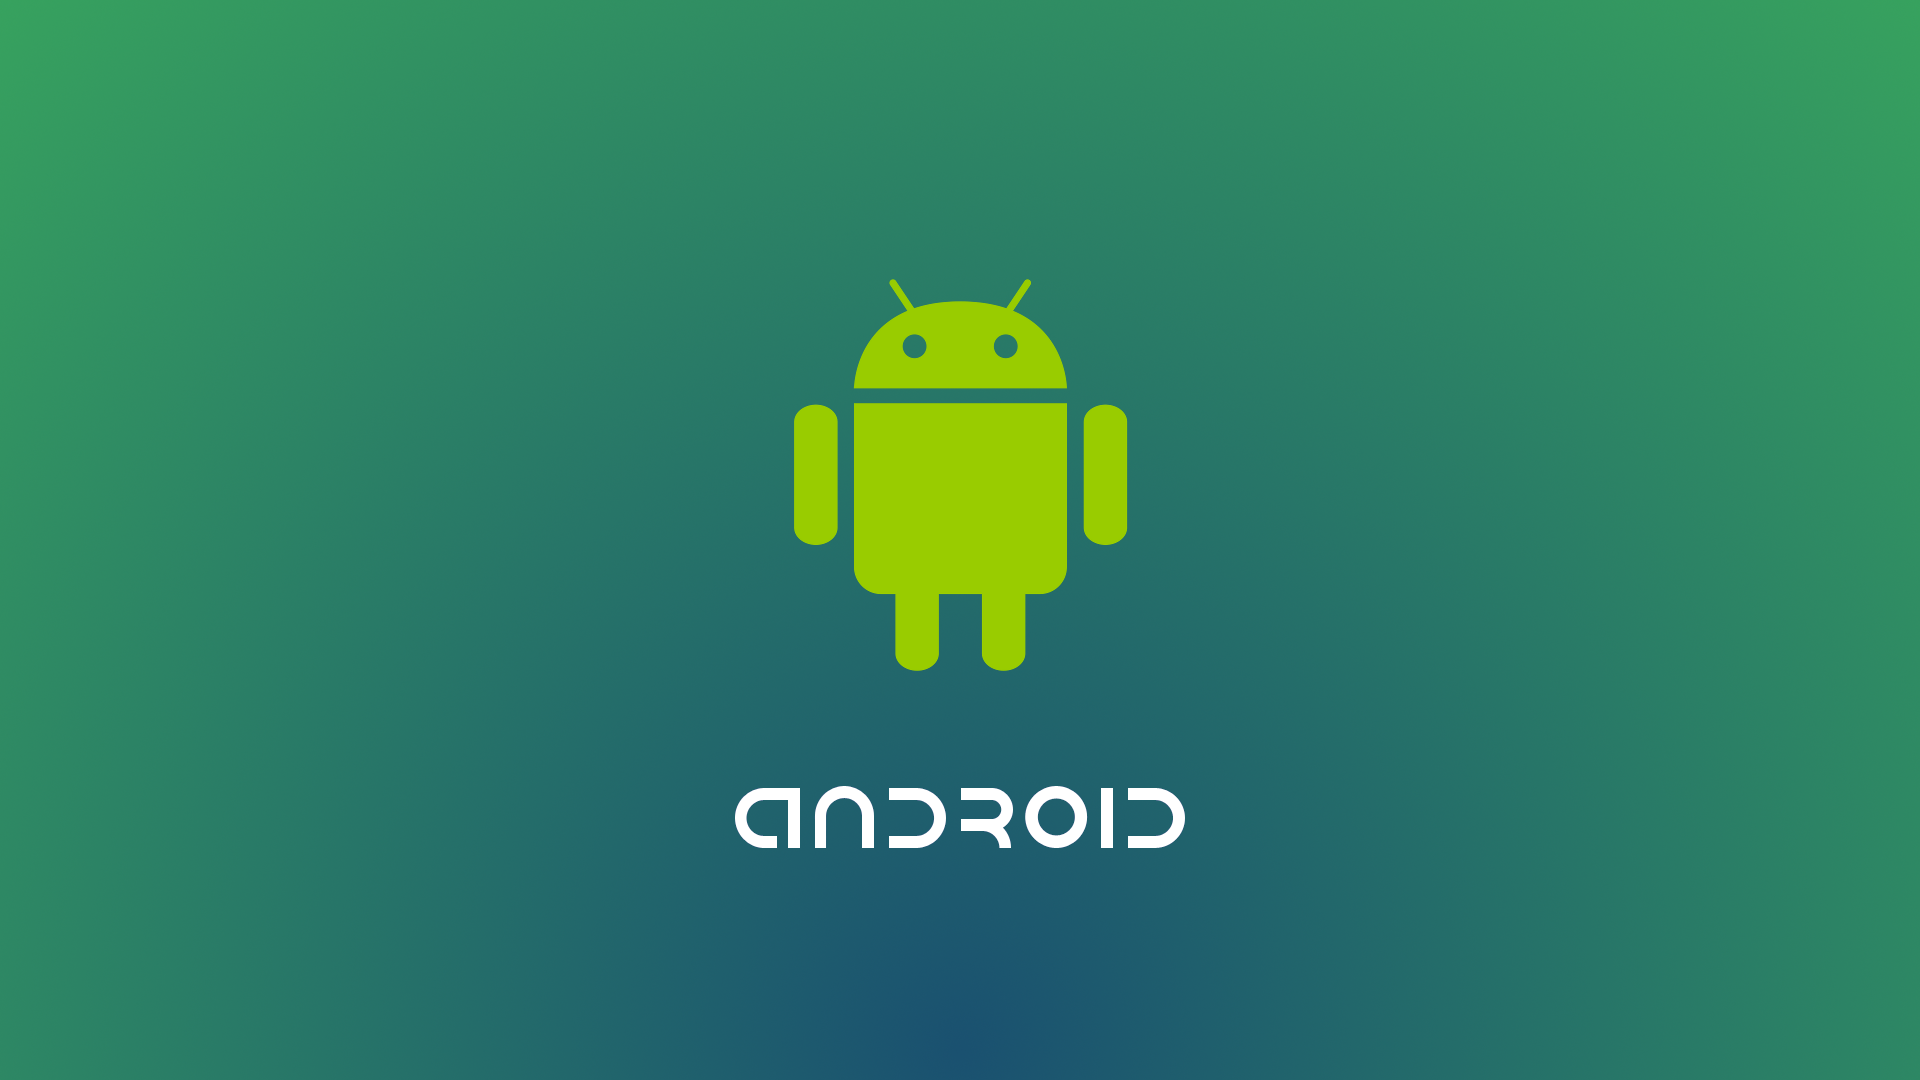 Android 7 İsmi Ne Olur?